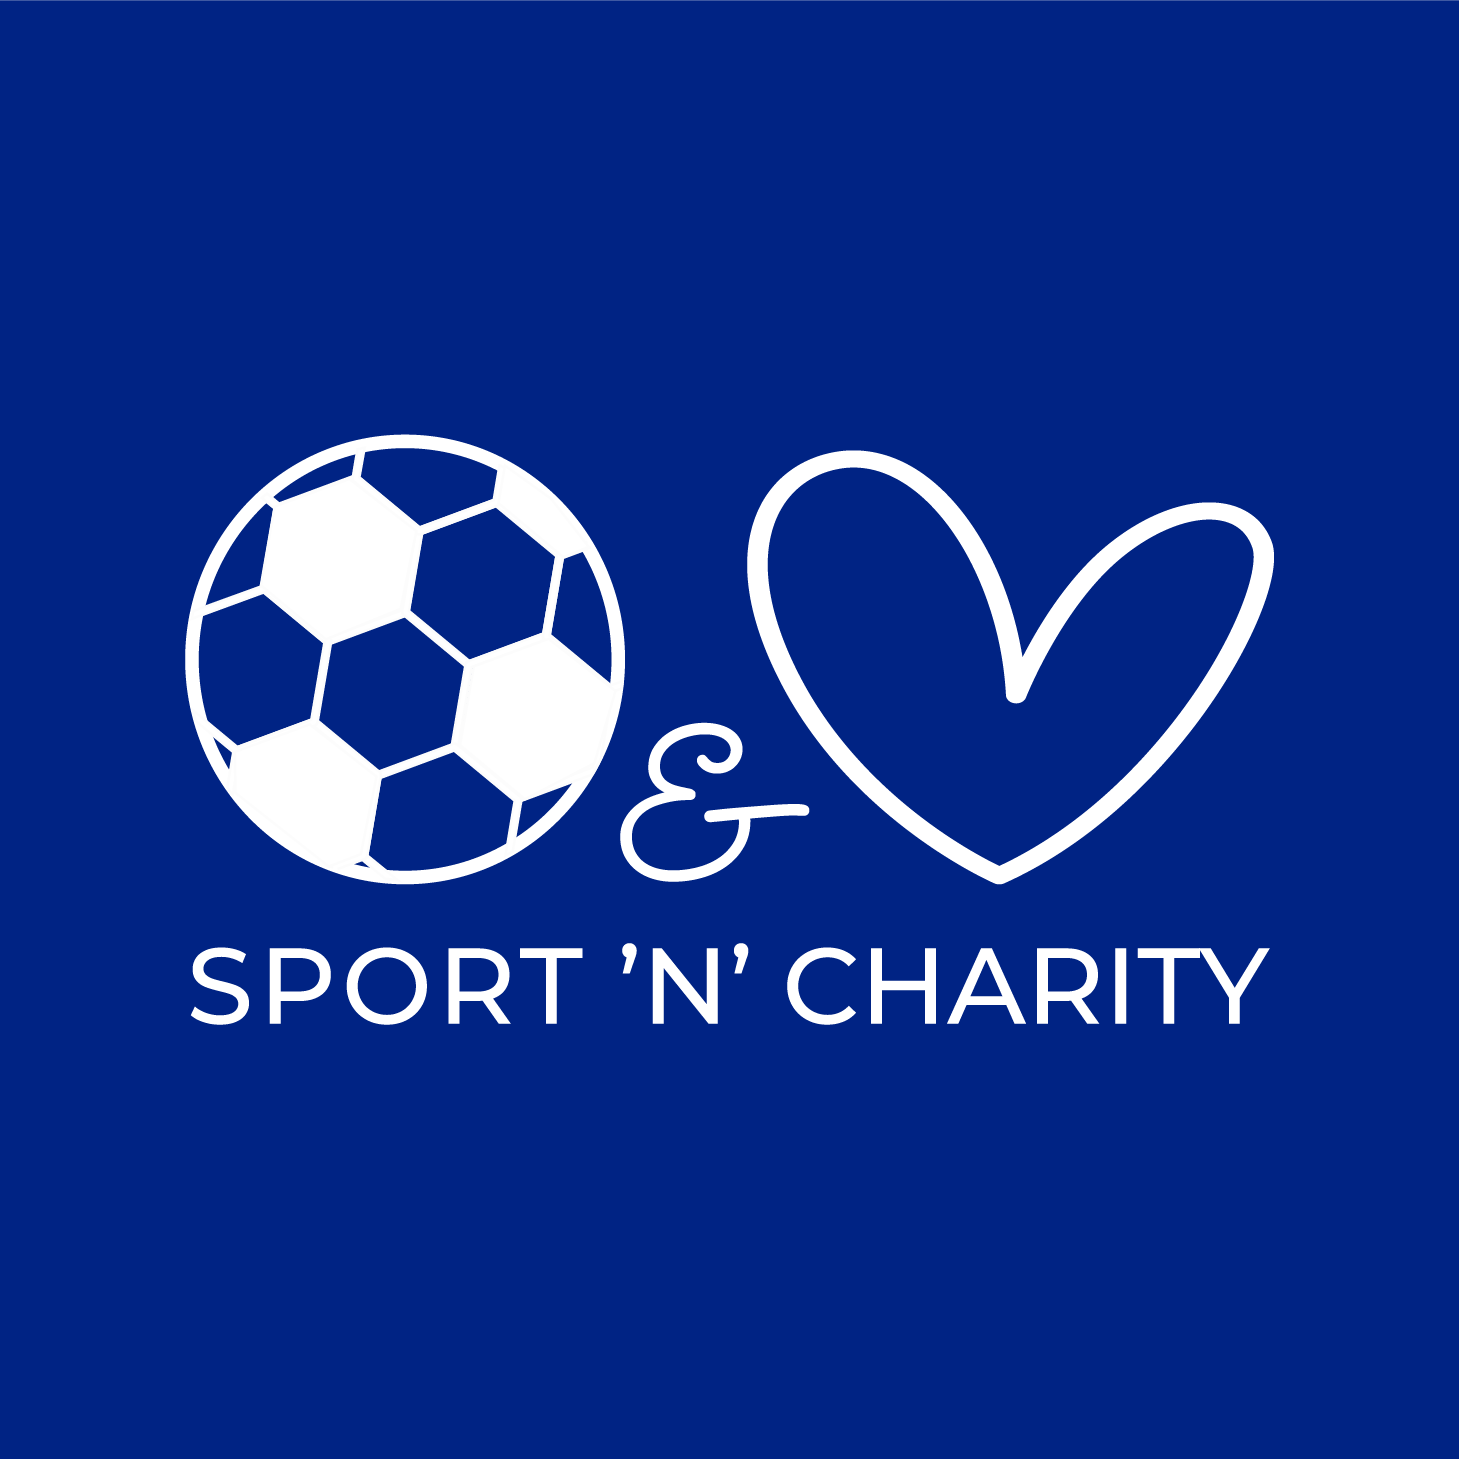 Sport 'n' Charity - vi gør en forskel - SPORT'N'CHARITY